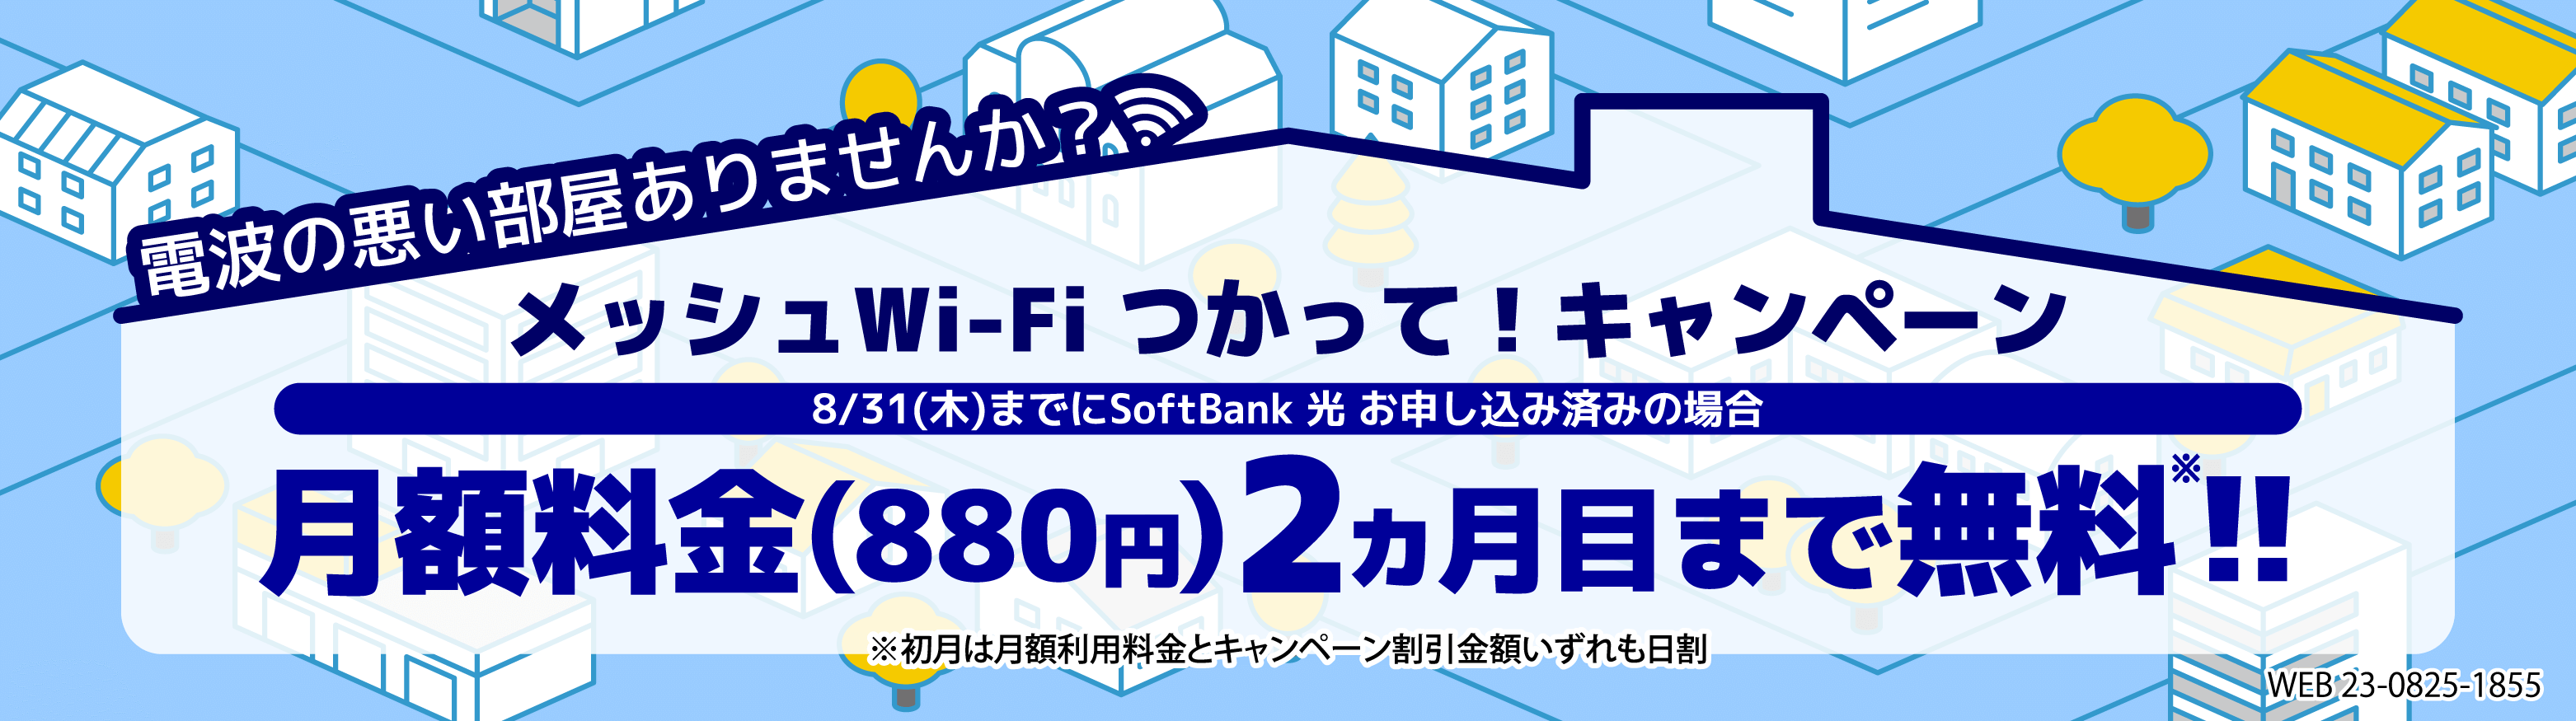 工事がいらないおうちのWi-FiSoftBank Air